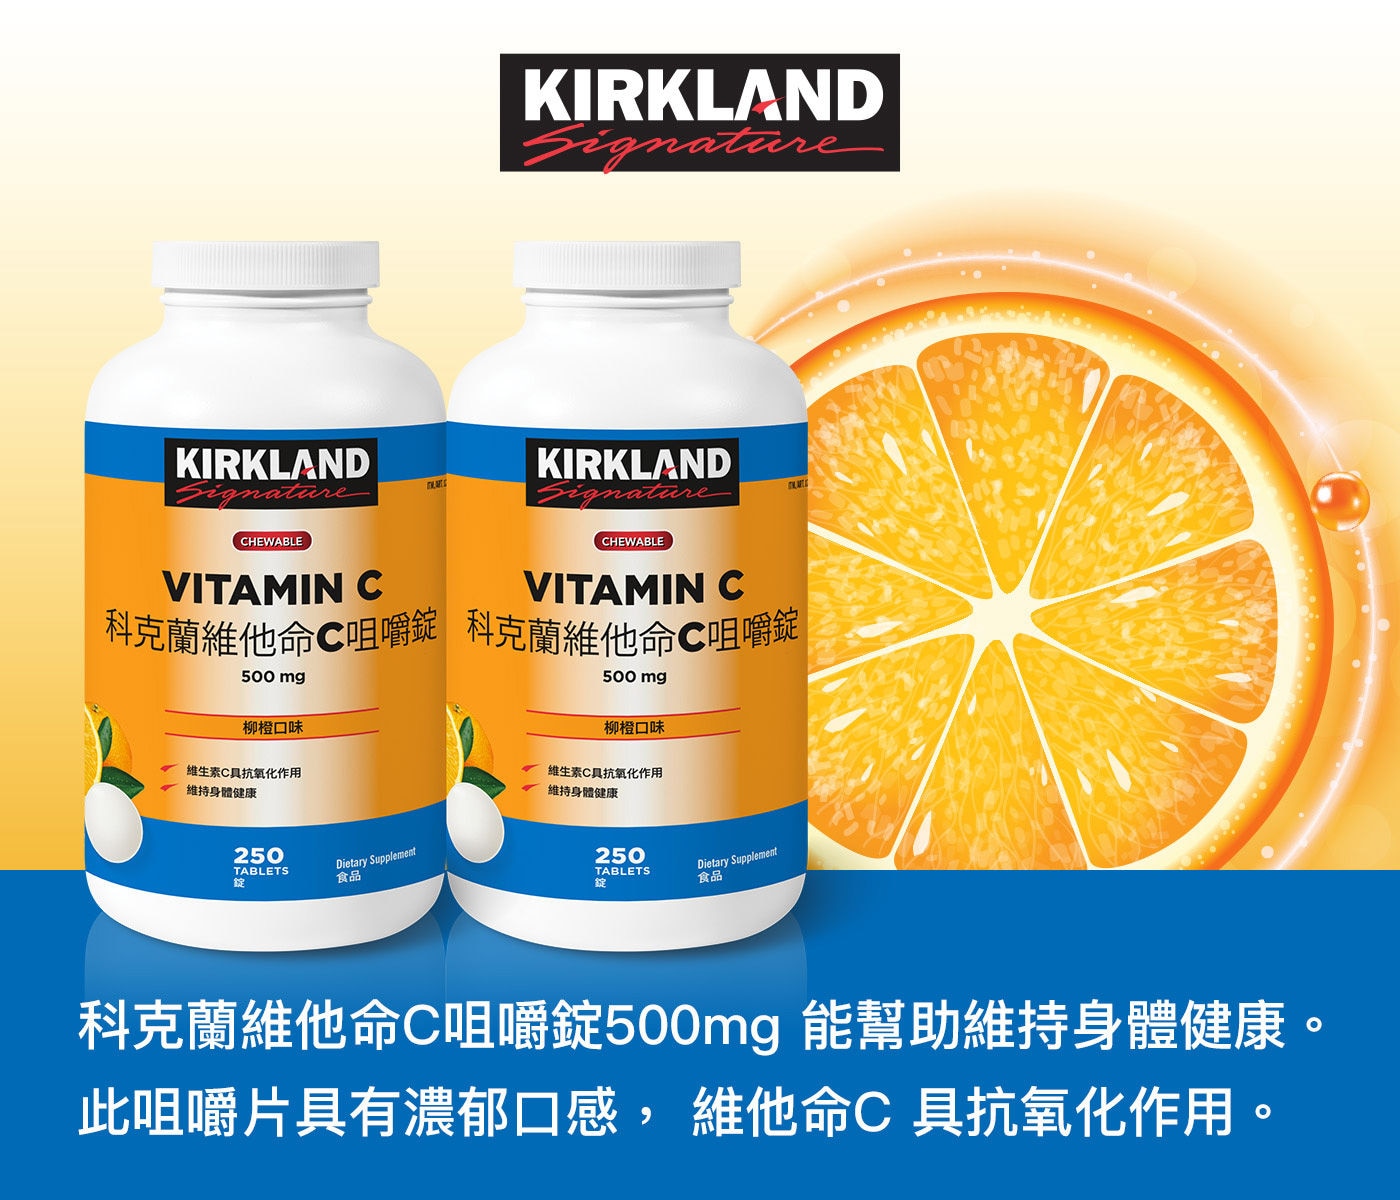 Kirkland Signature 科克蘭維他命C咀嚼錠柳橙口味能幫助維持身體健康，此咀嚼片具有濃郁口感，維他命C具抗氧化作用。